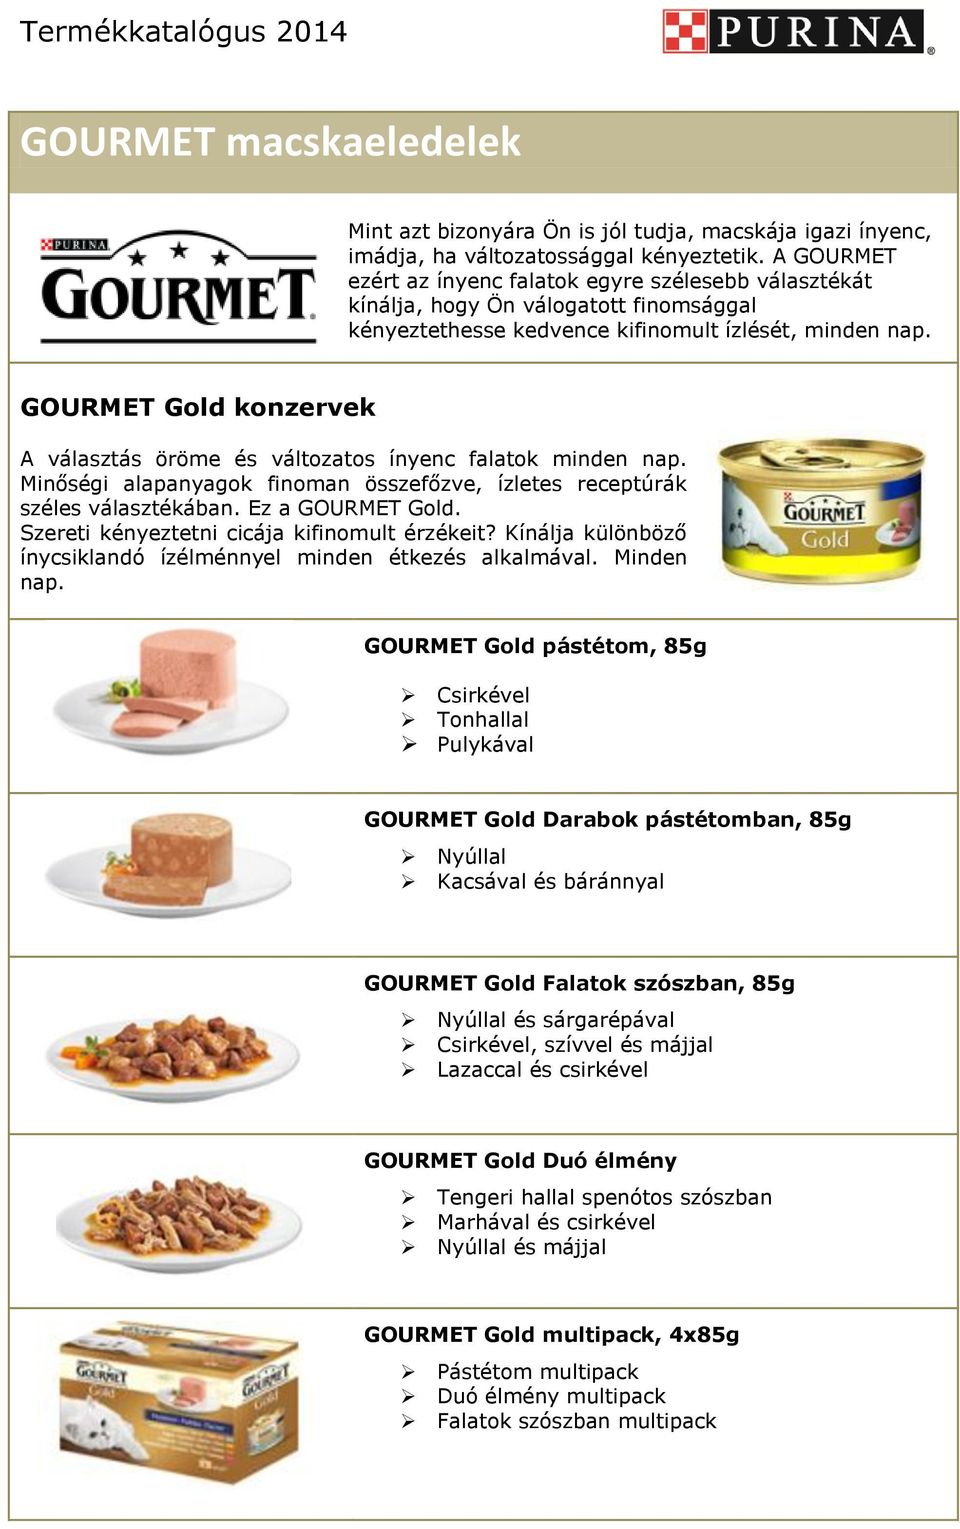 GOURMET Gold konzervek A választás öröme és változatos ínyenc falatok minden nap. Minőségi alapanyagok finoman összefőzve, ízletes receptúrák széles választékában. Ez a GOURMET Gold.